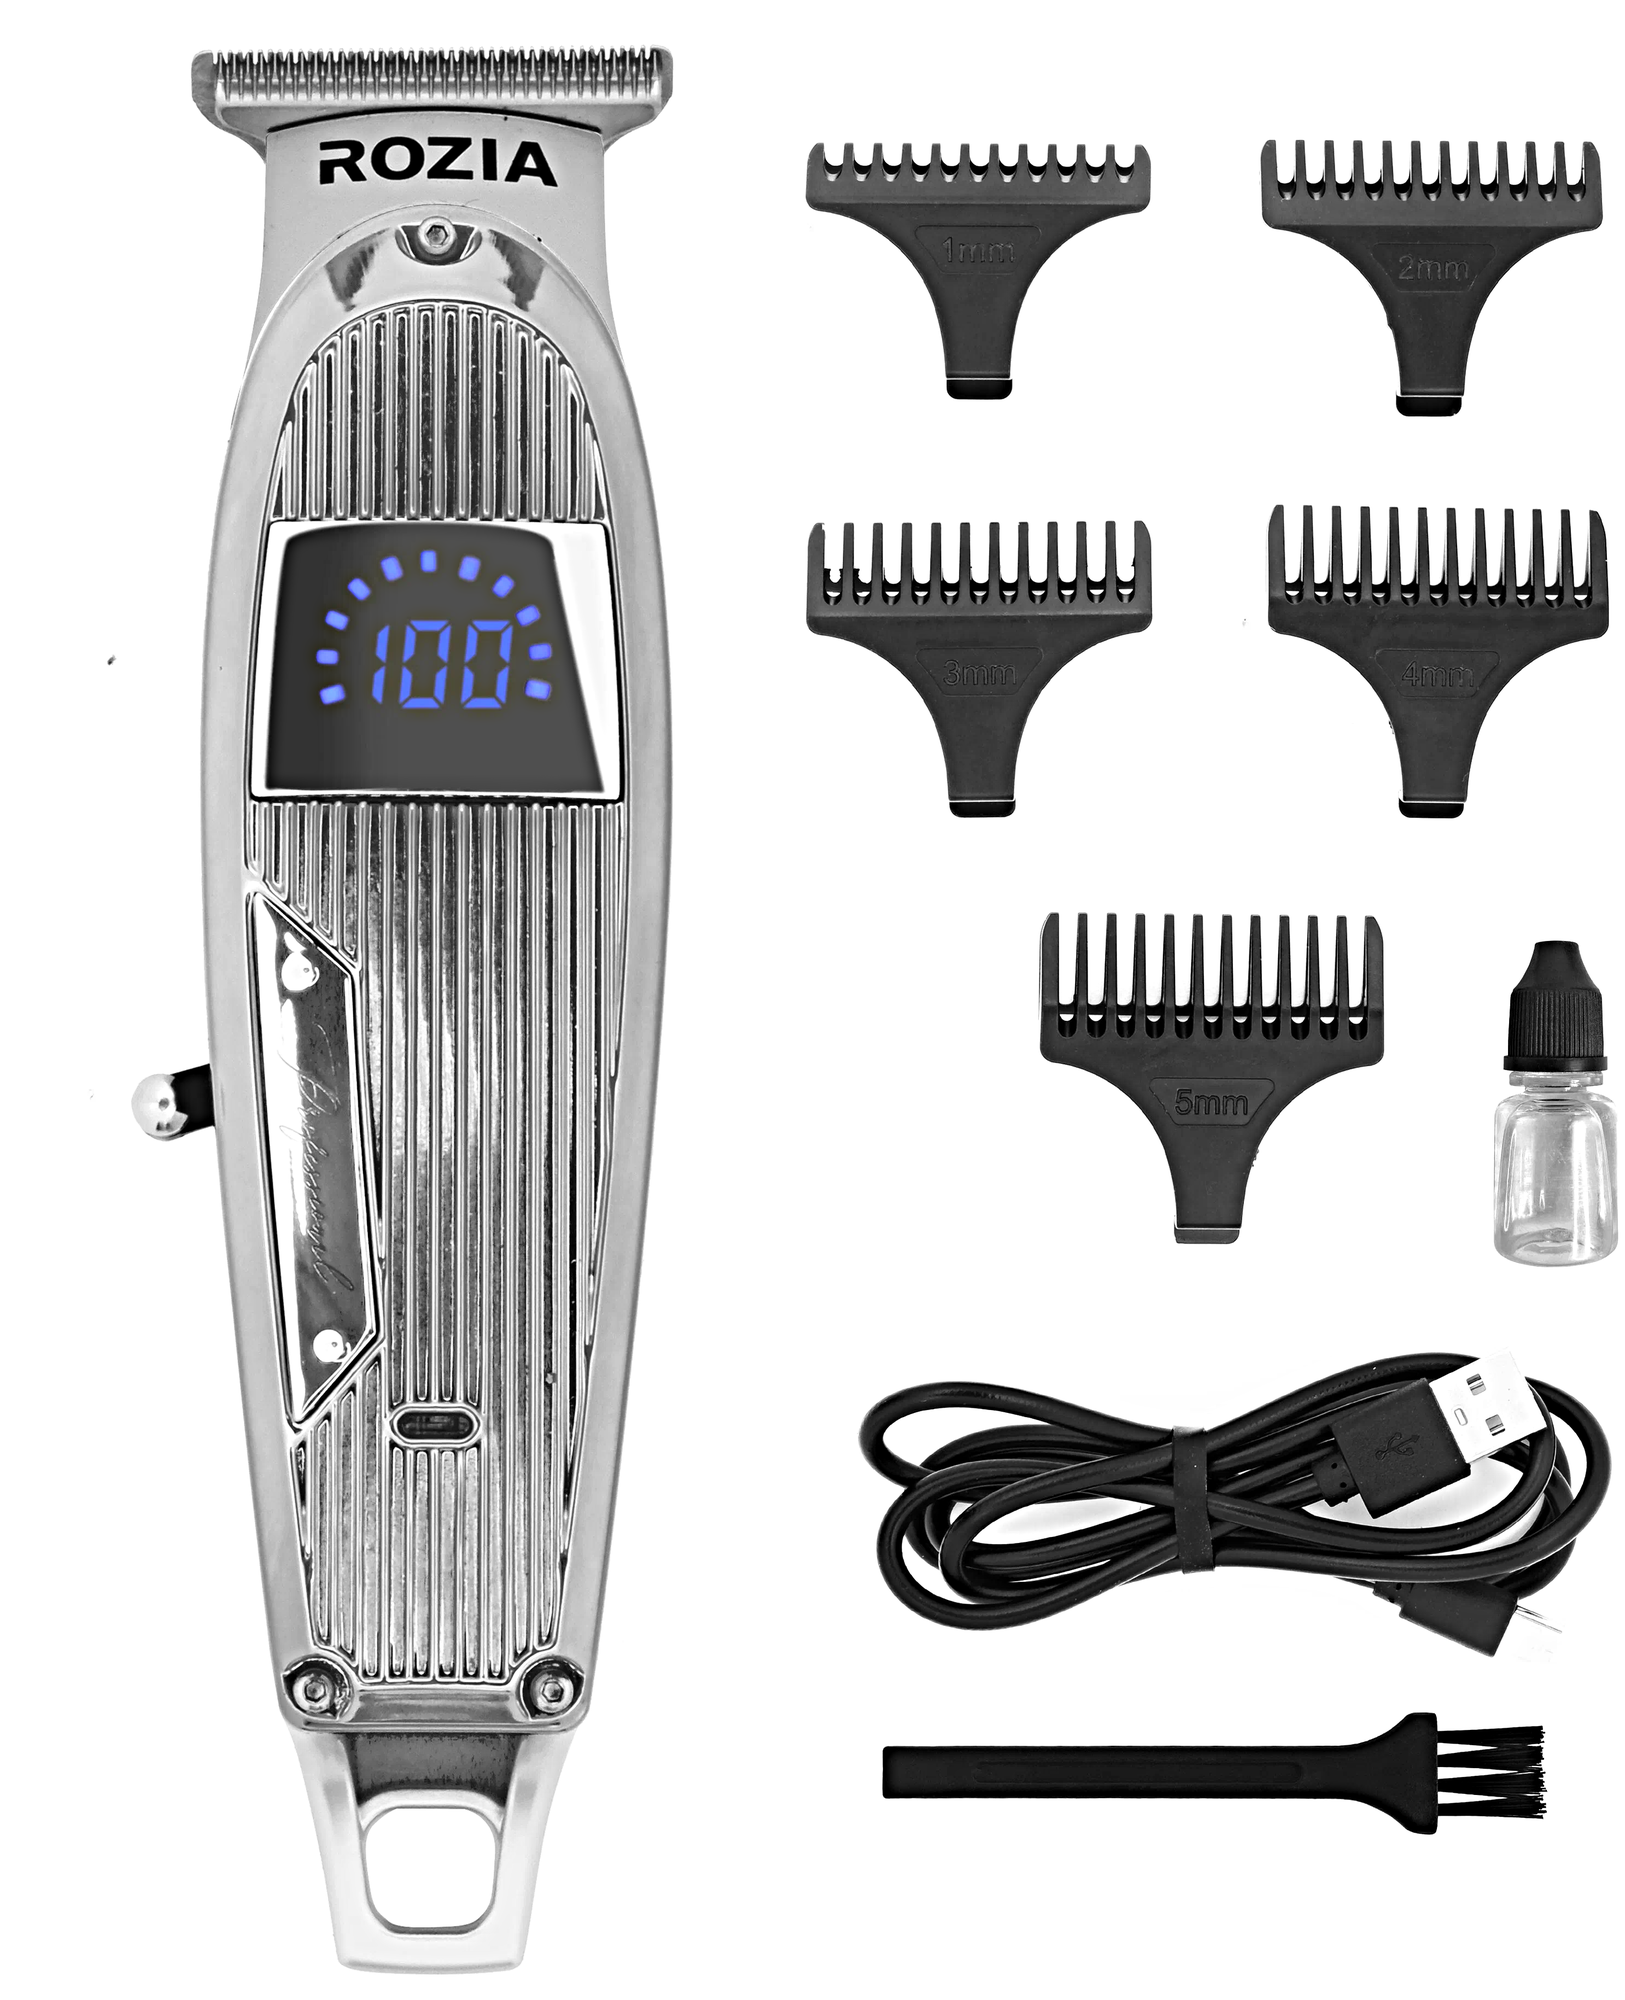 Машинка для стрижки волос HQ-321, Профессиональный триммер для стрижки волос, для бороды, усов, Серебристый